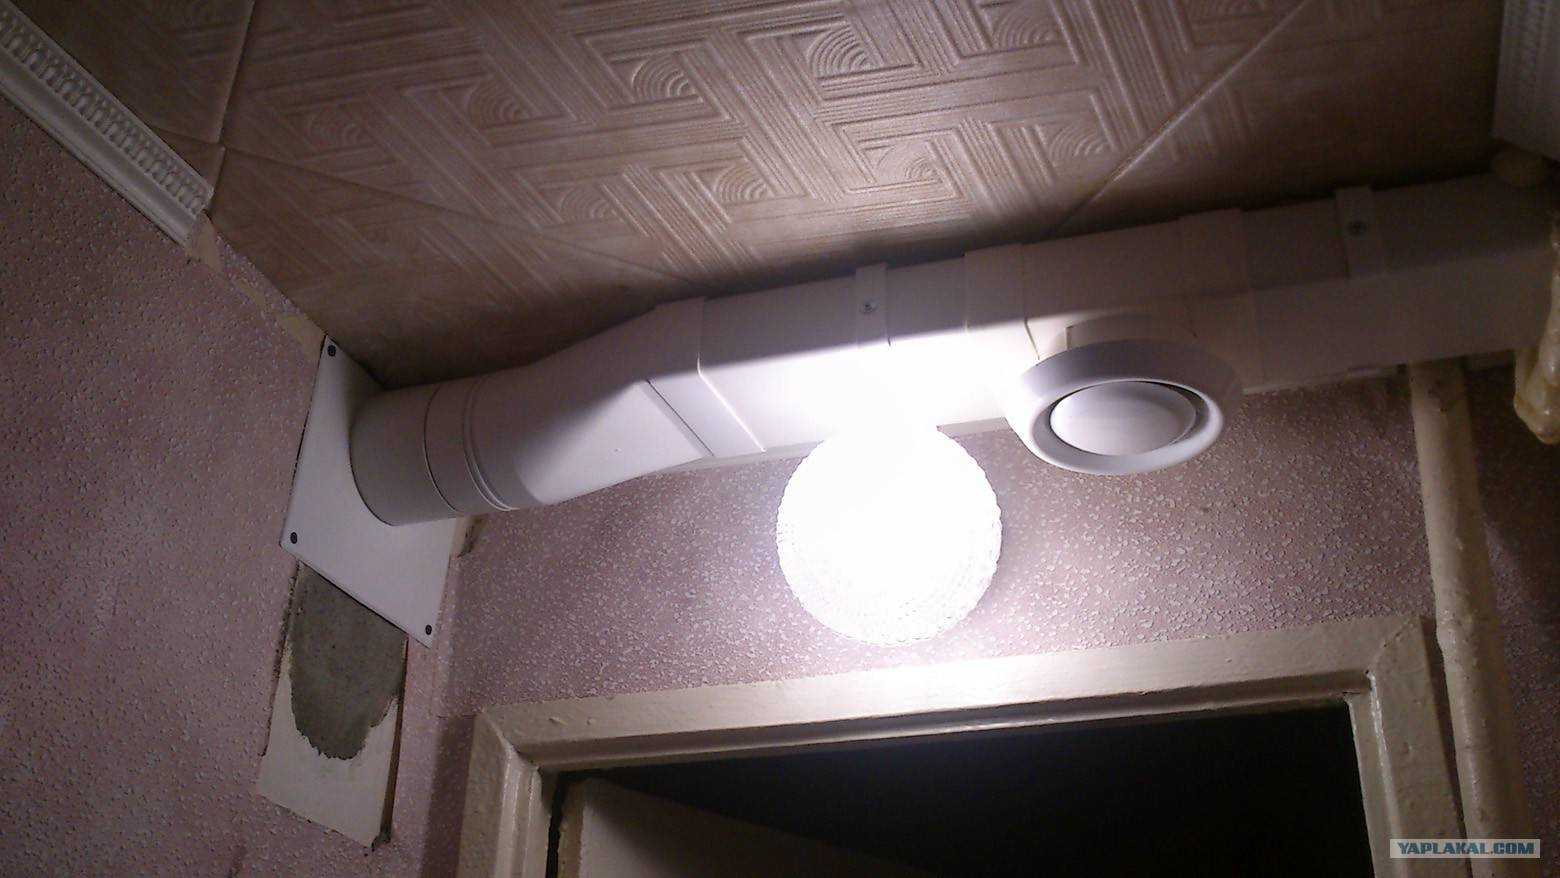 Вентиляция натяжной в ванне. Вытяжка для вентиляции в ванной. Вентиляция в потолке и для вытяжки. Вентиляция в подвесном потолке. Вентиляция под натяжным потолком для вытяжки.